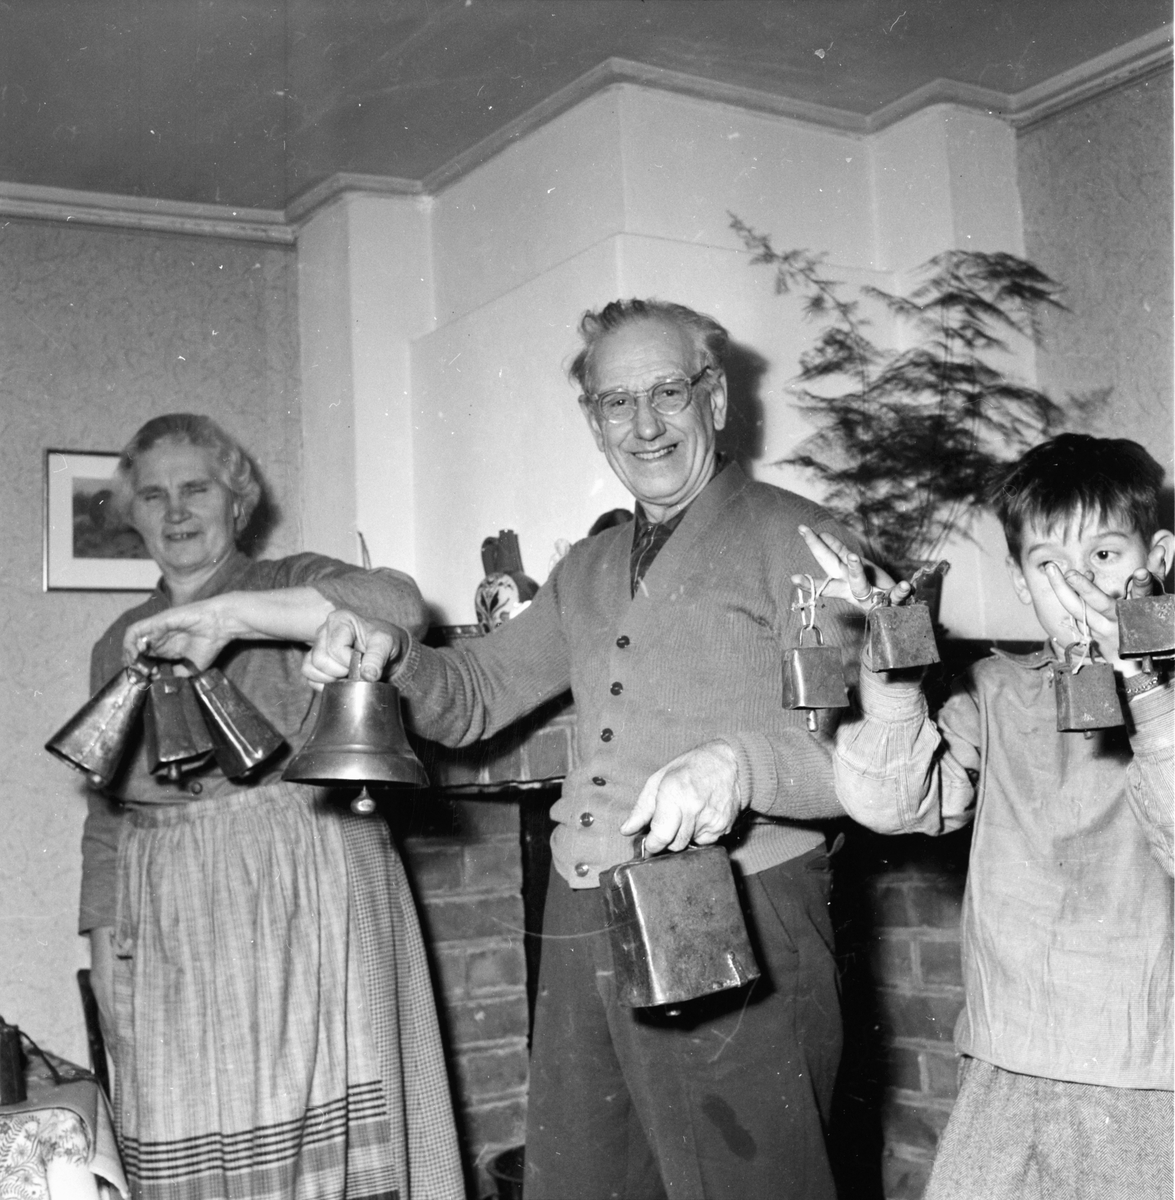 Jean Rönnlund parapykolog
1/2 1958